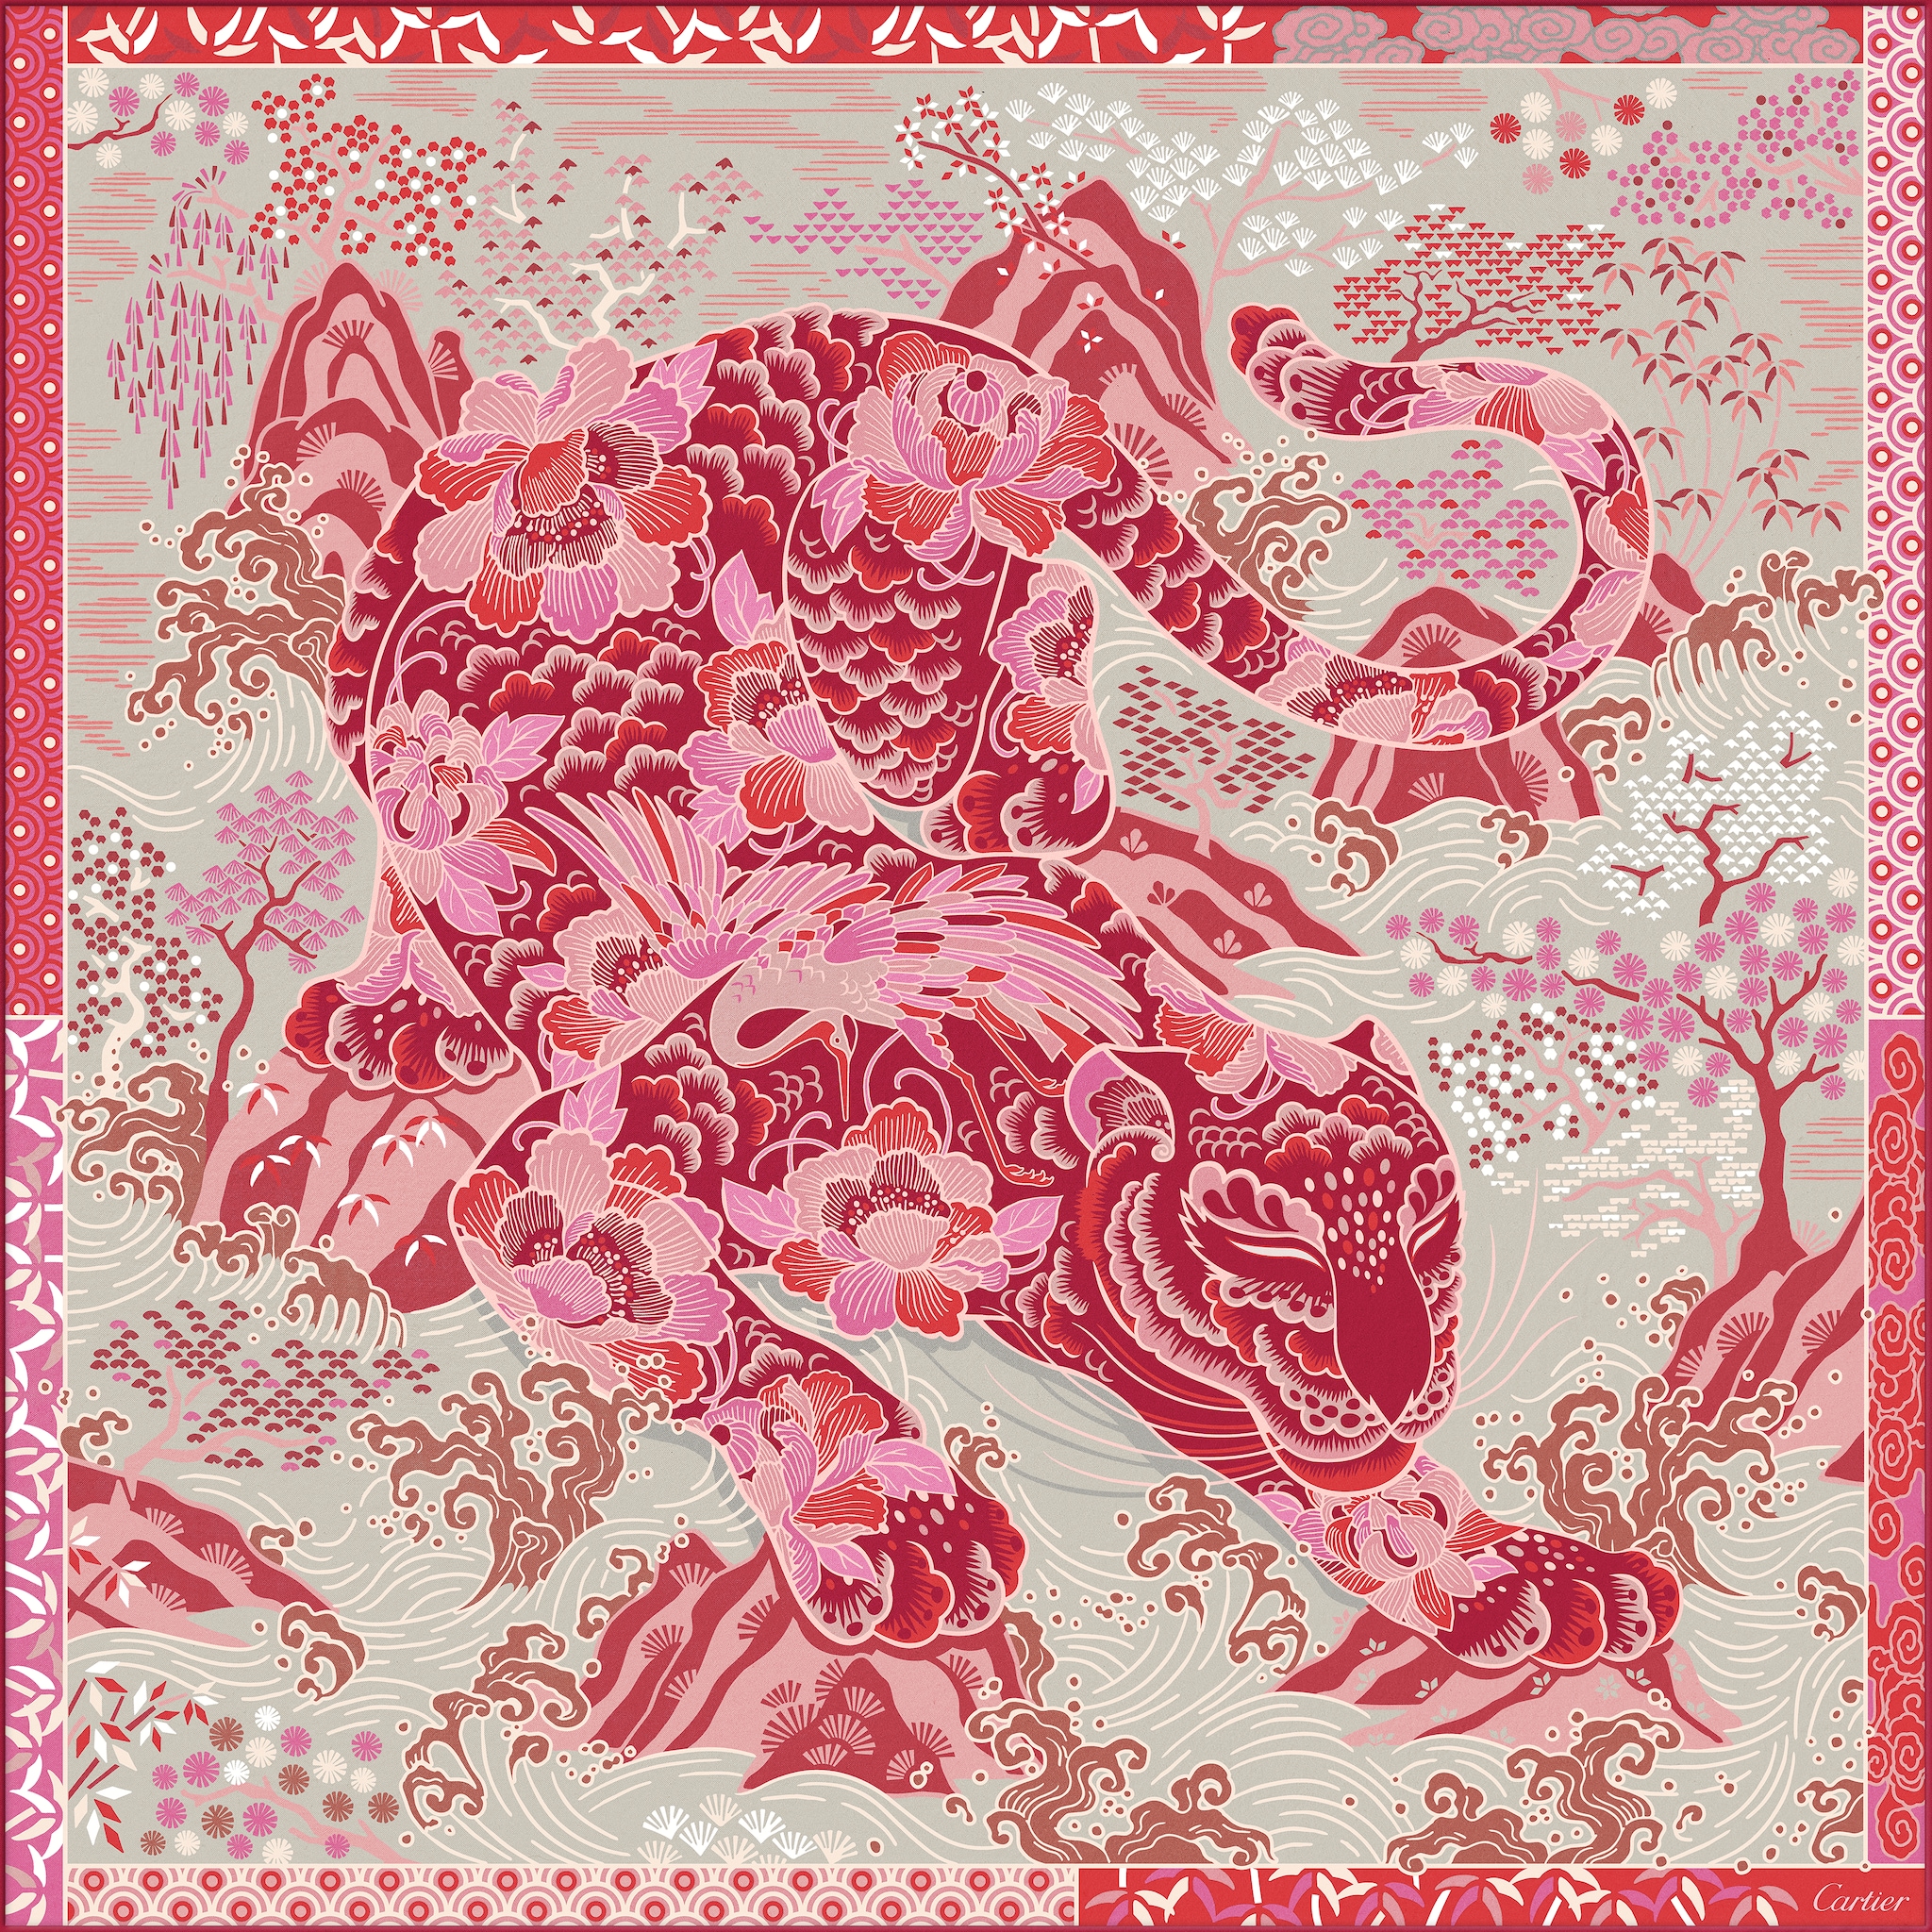 美洲豹圖案方巾紅色及米色斜紋真絲